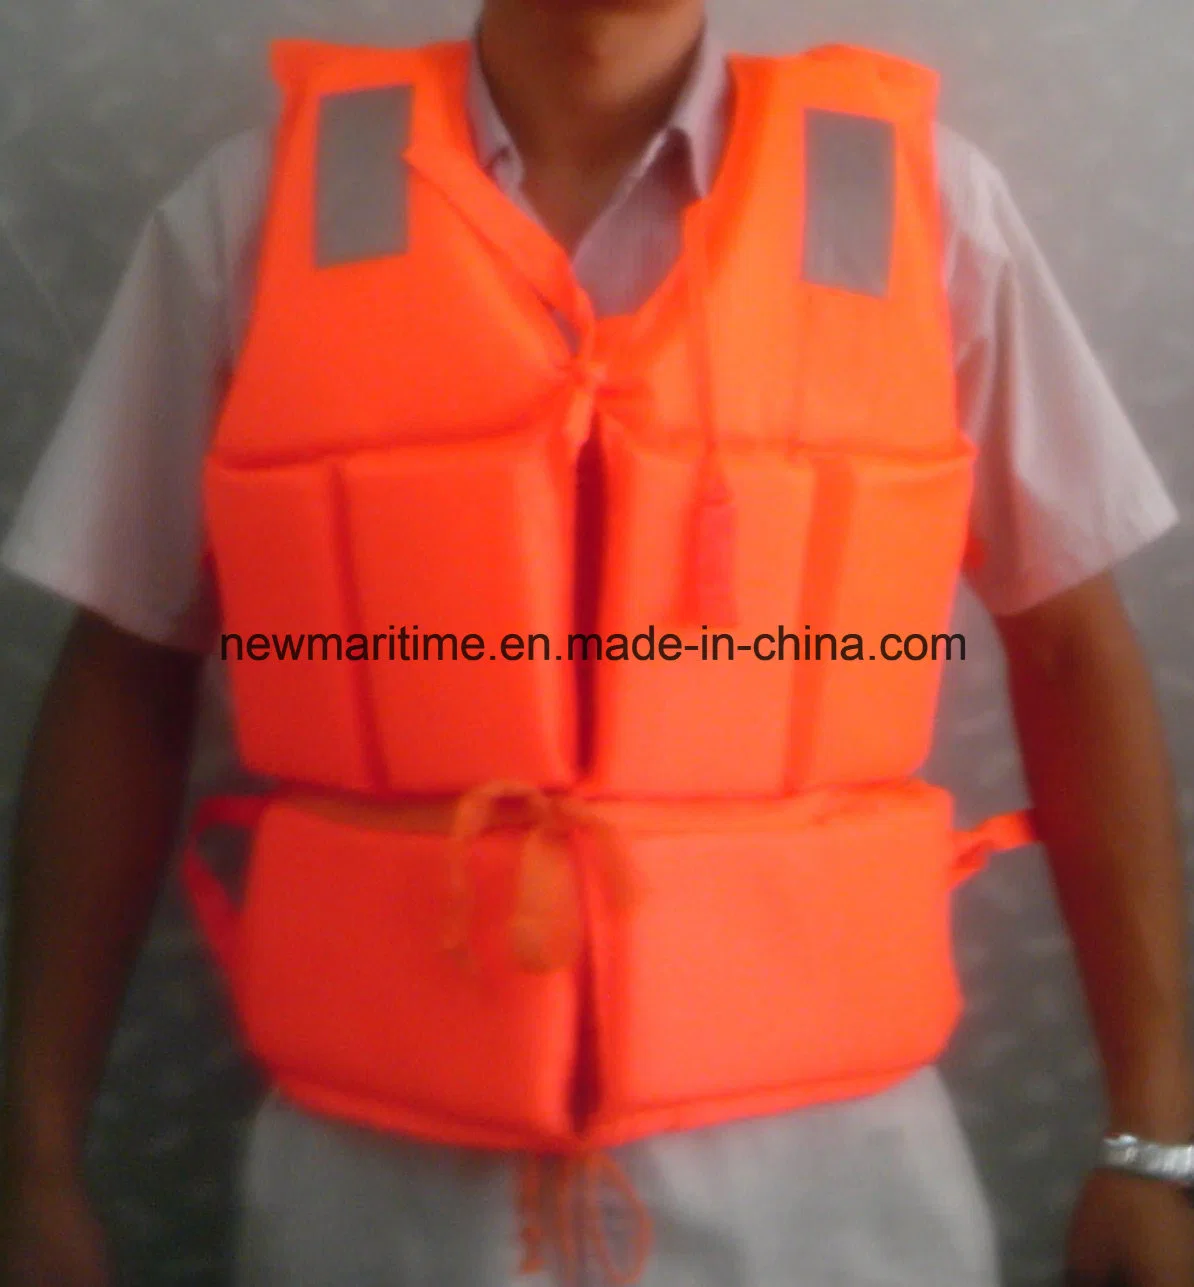 New Marine Lifejacket Safety Life Jacket for Watersports